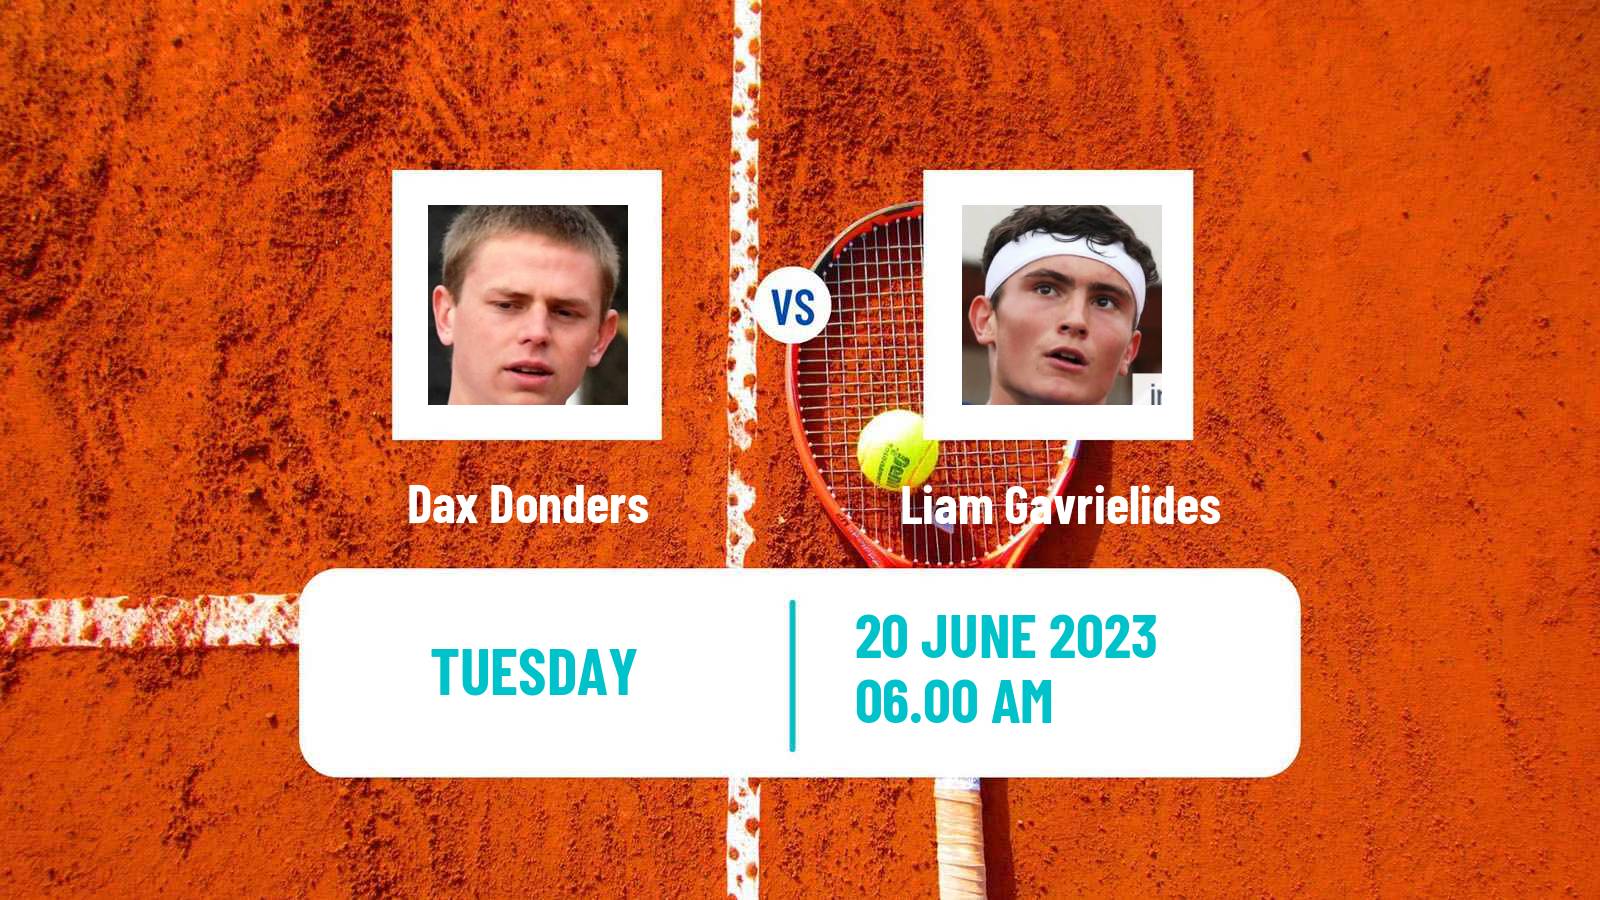 Tennis ITF M15 Saarlouis Men Dax Donders - Liam Gavrielides